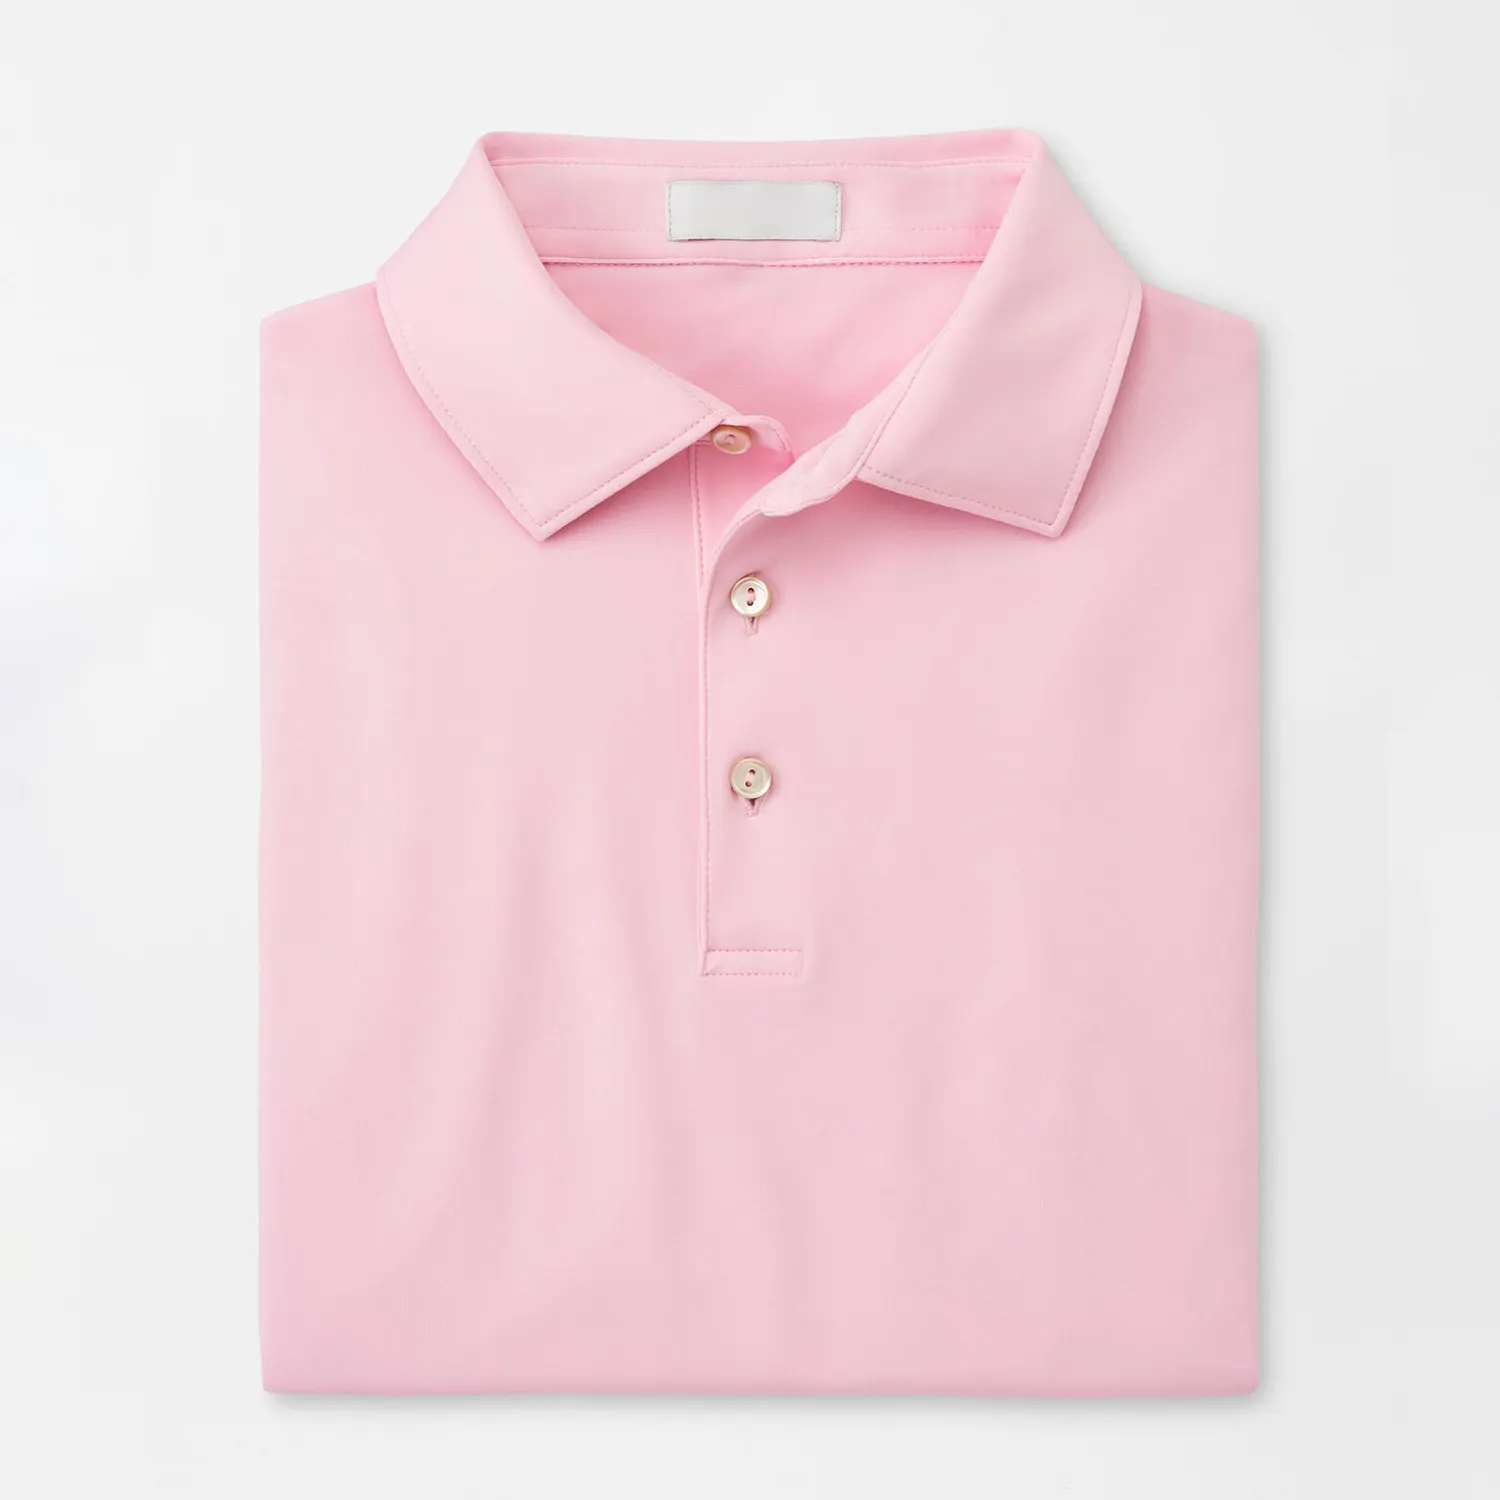 Benutzer definierte Logo Golf Leistung leere Sublimation hemden 100 Polyester weiß mercer isierte Baumwolle Polos hirts